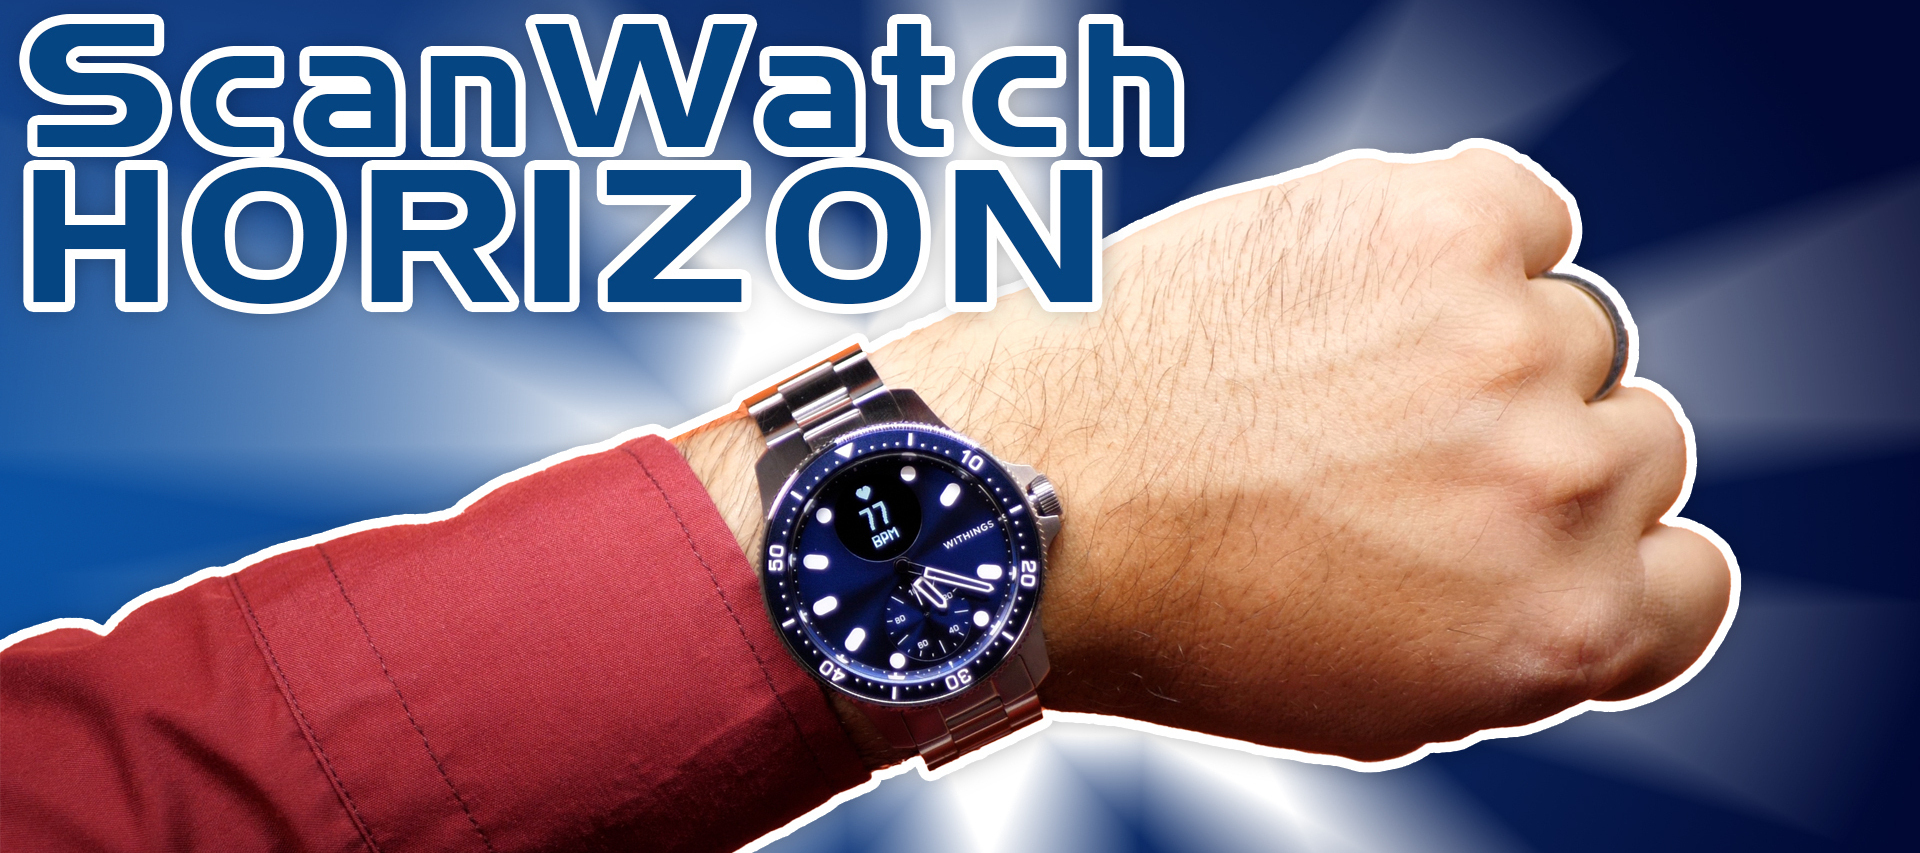 Mehr als eine Uhr, mehr als manche SmartWatch - Scanwatch Horizon - SmartWatch kann auch edel